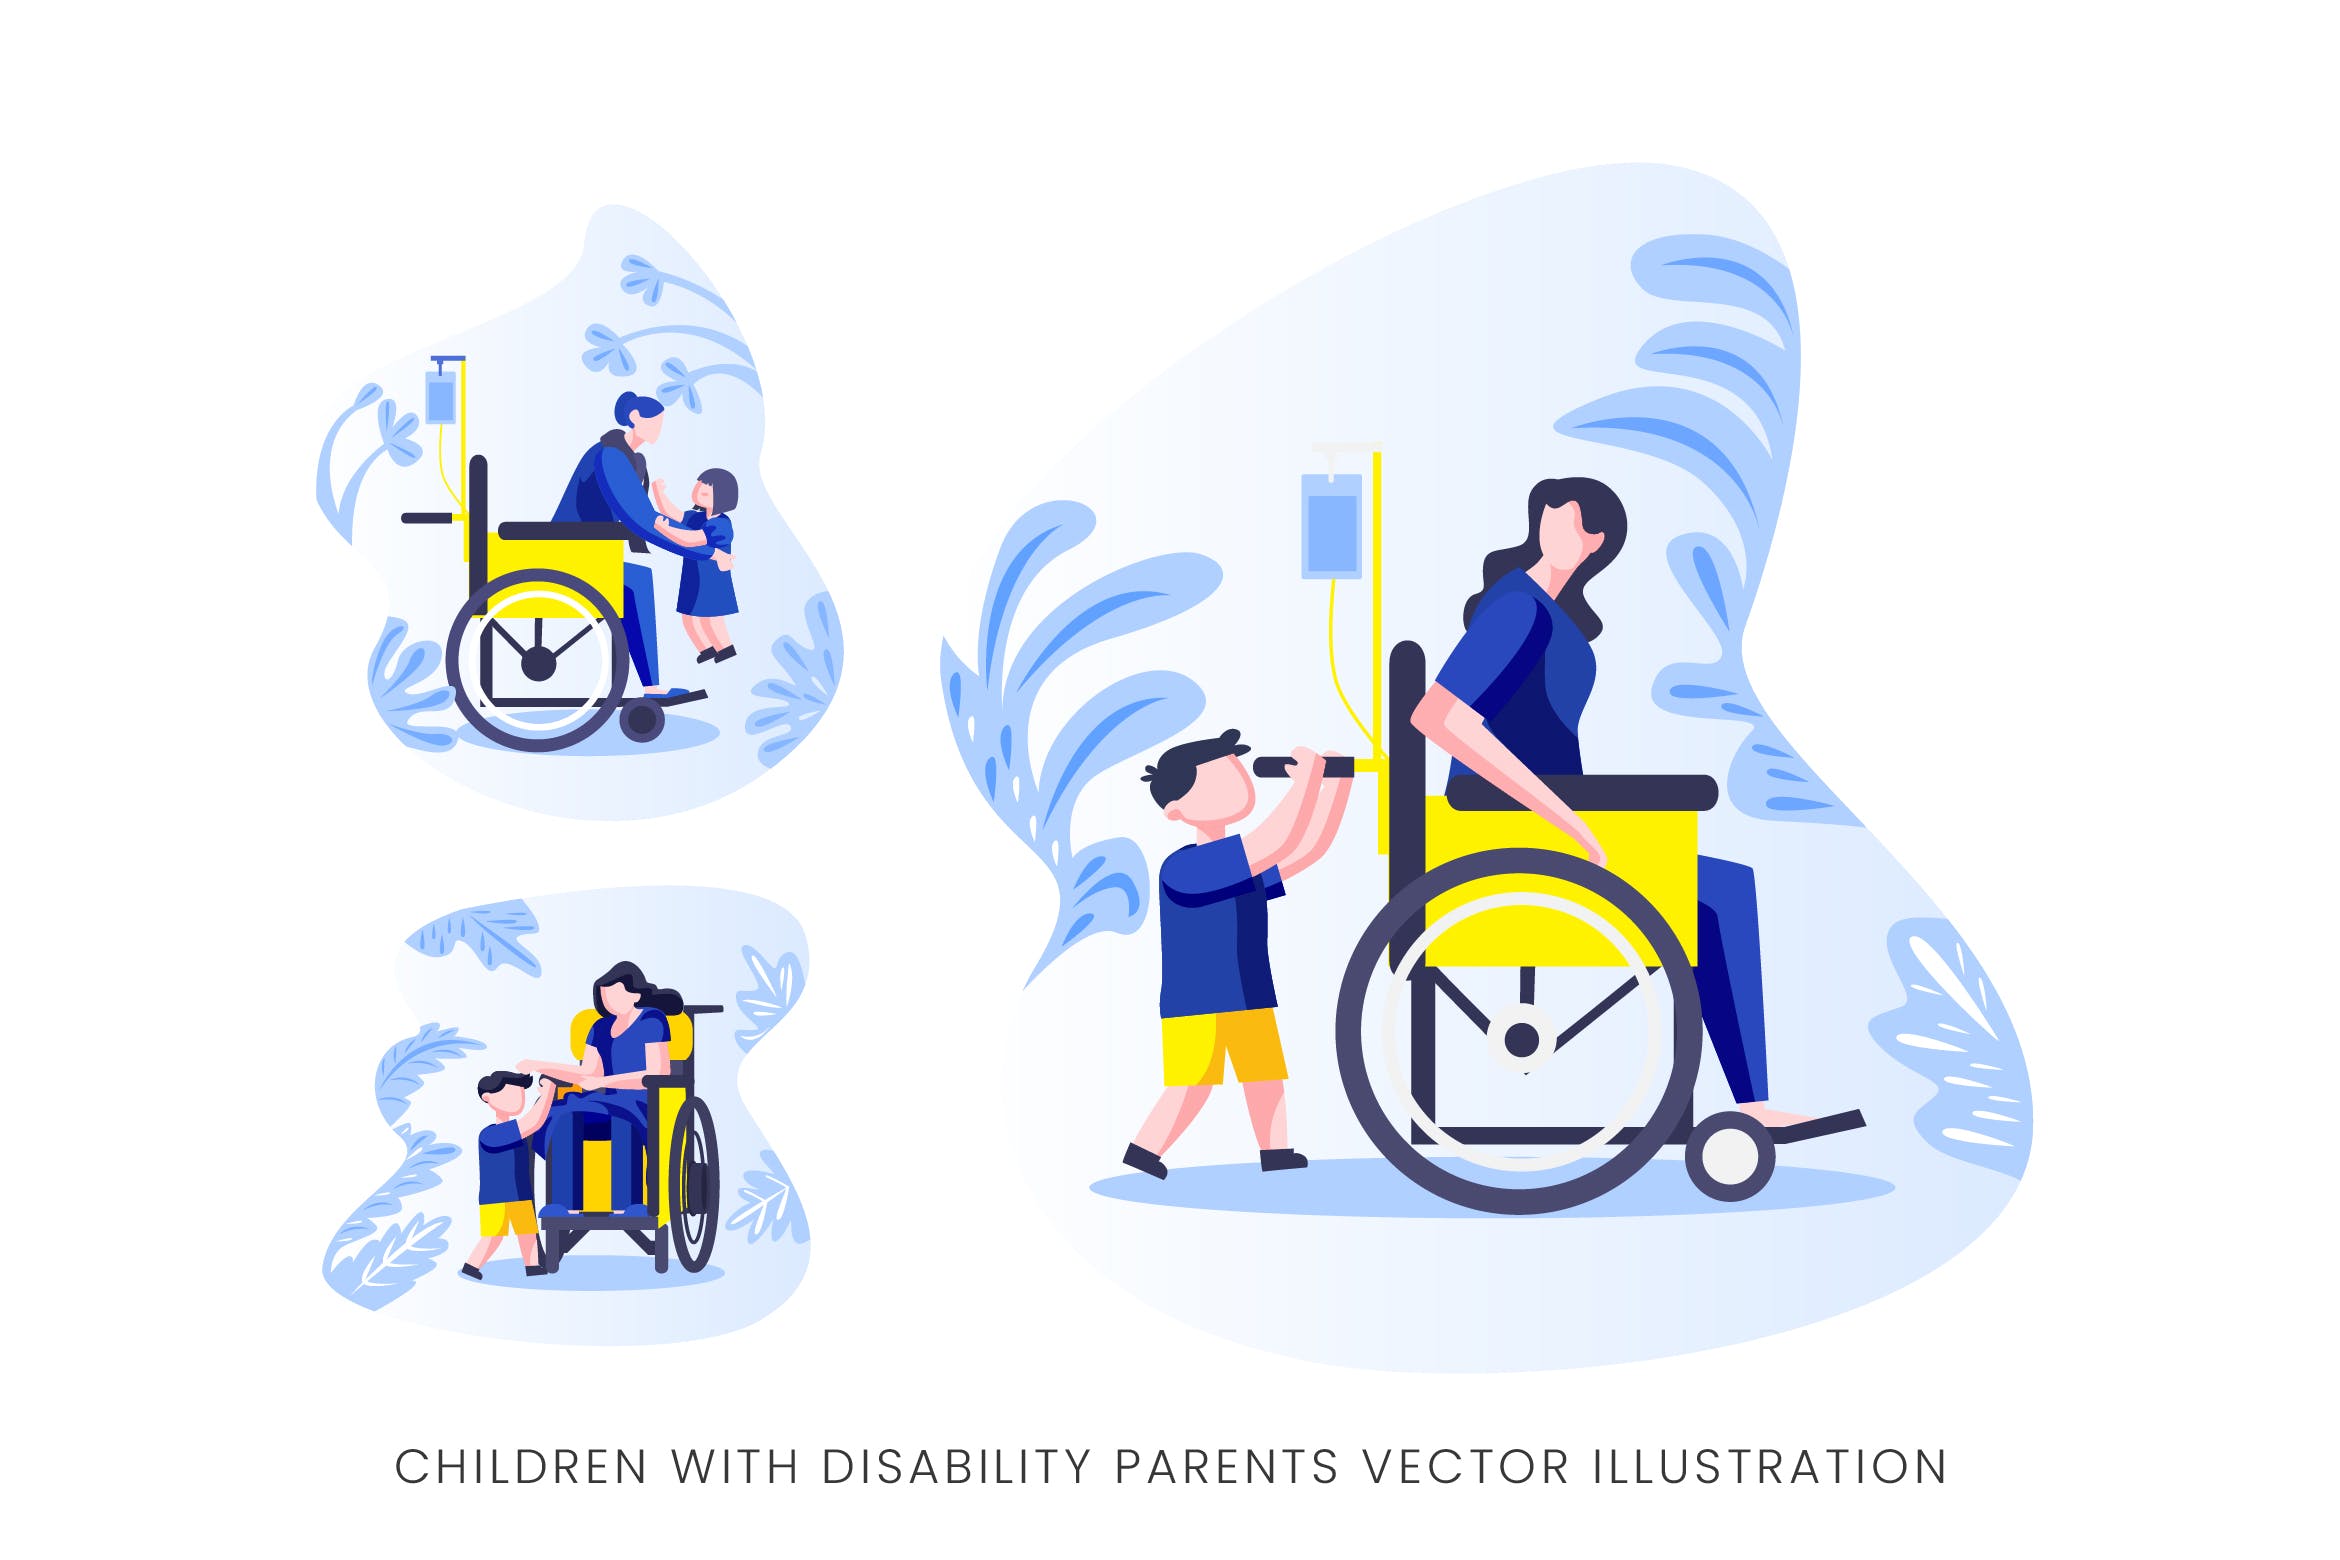 伤残人士与儿童人物形象素材库精选手绘插画矢量素材 Children With Disability Parents Vector Character插图